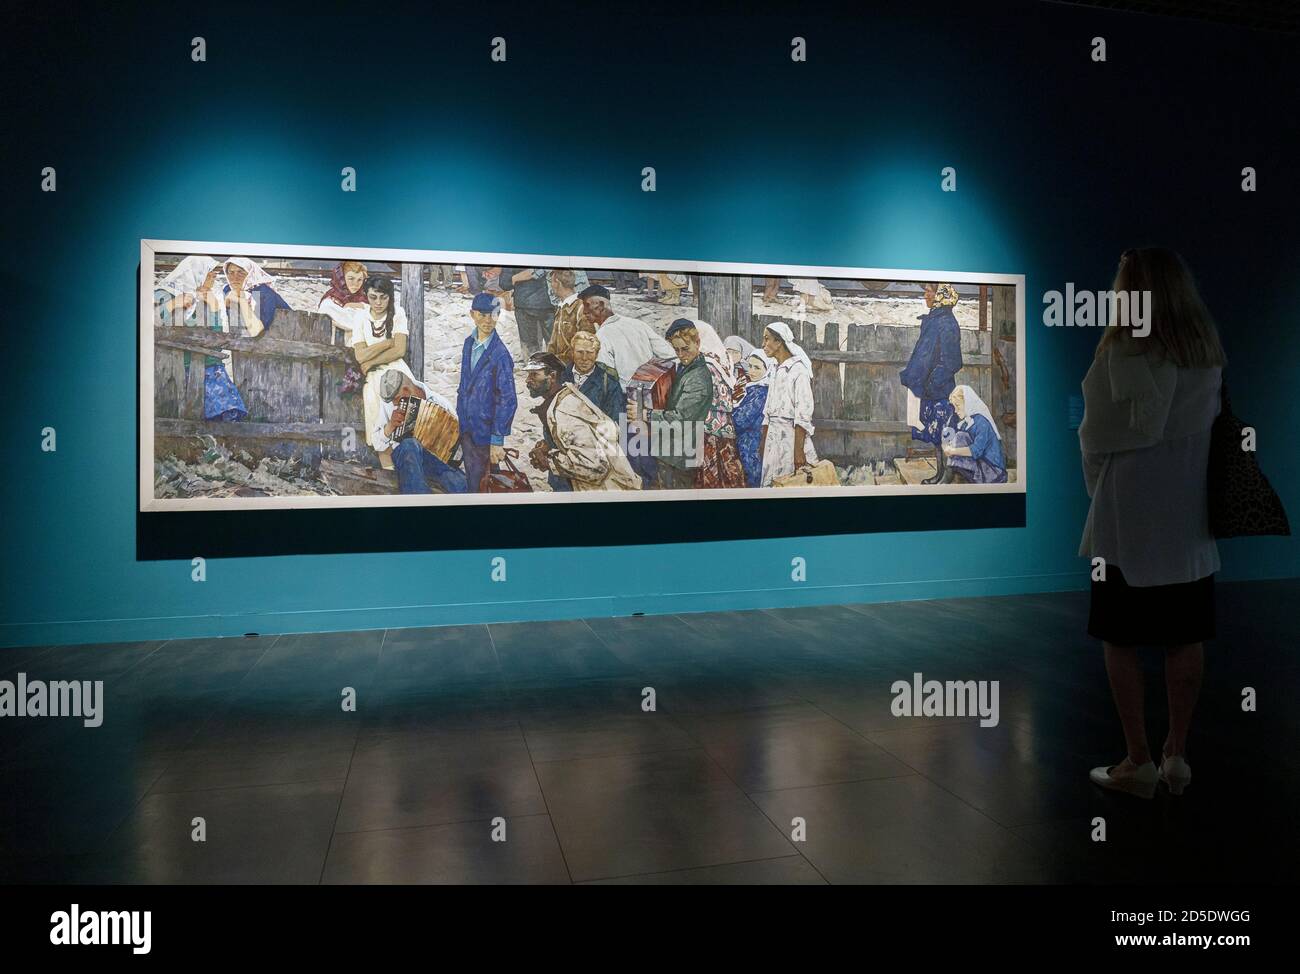 Züge, die die Jungs wegnehmen, ein Werk von Leonid Kabachek aus dem Jahr 1964, 1924 - 2001/2. Ausgestellt in der Filiale des Russischen Staatsmuseums in Malaga, Provinz Malaga, Stockfoto